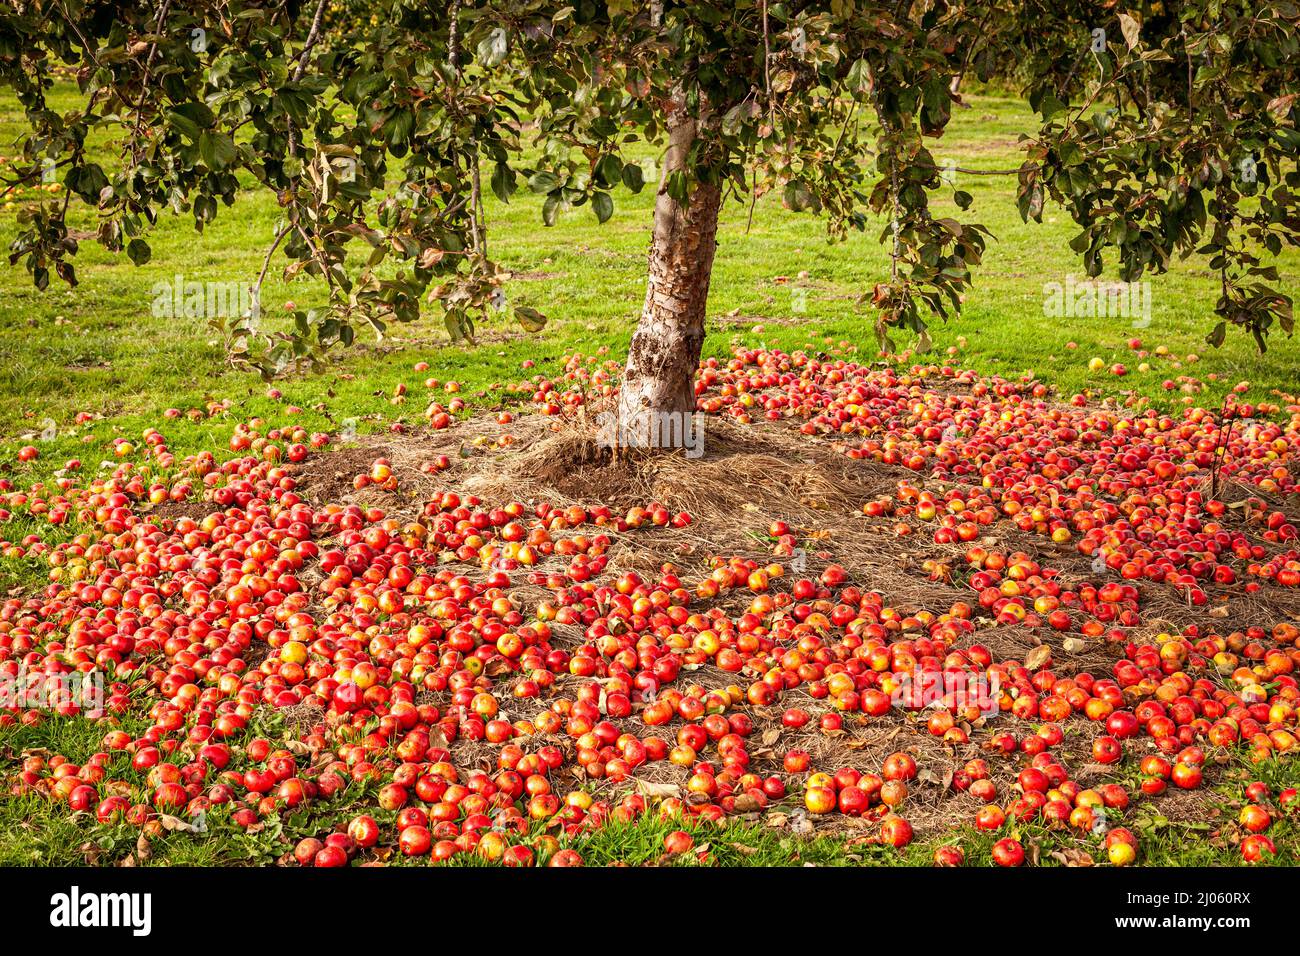 Beaucoup de pommes venteuses en dessous de pommiers suspendus dans le verger ensoleillé Banque D'Images